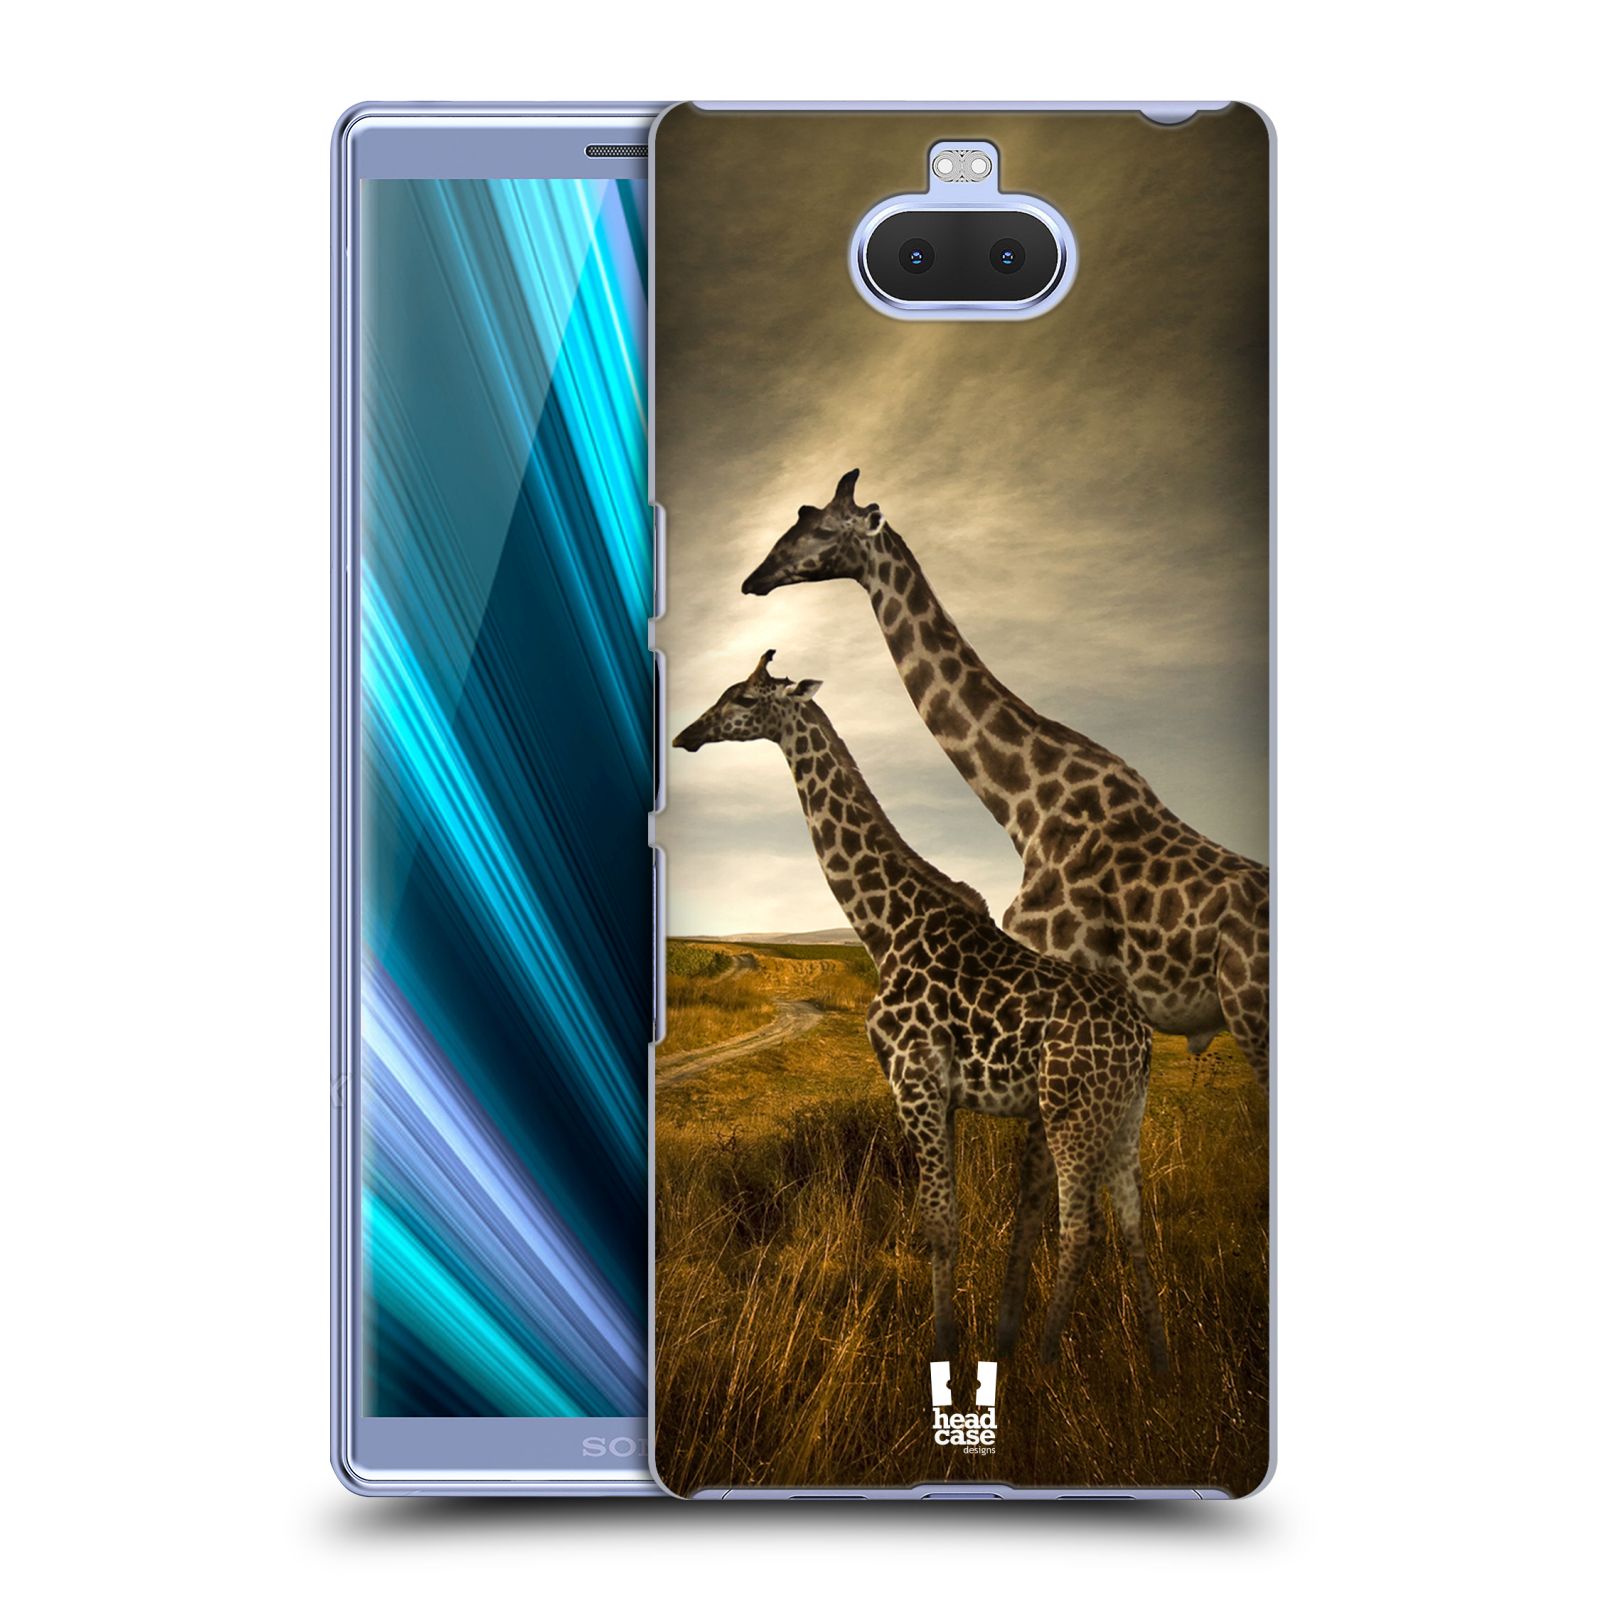 Zadní obal pro mobil Sony Xperia 10 ULTRA - HEAD CASE - Svět zvířat žirafy